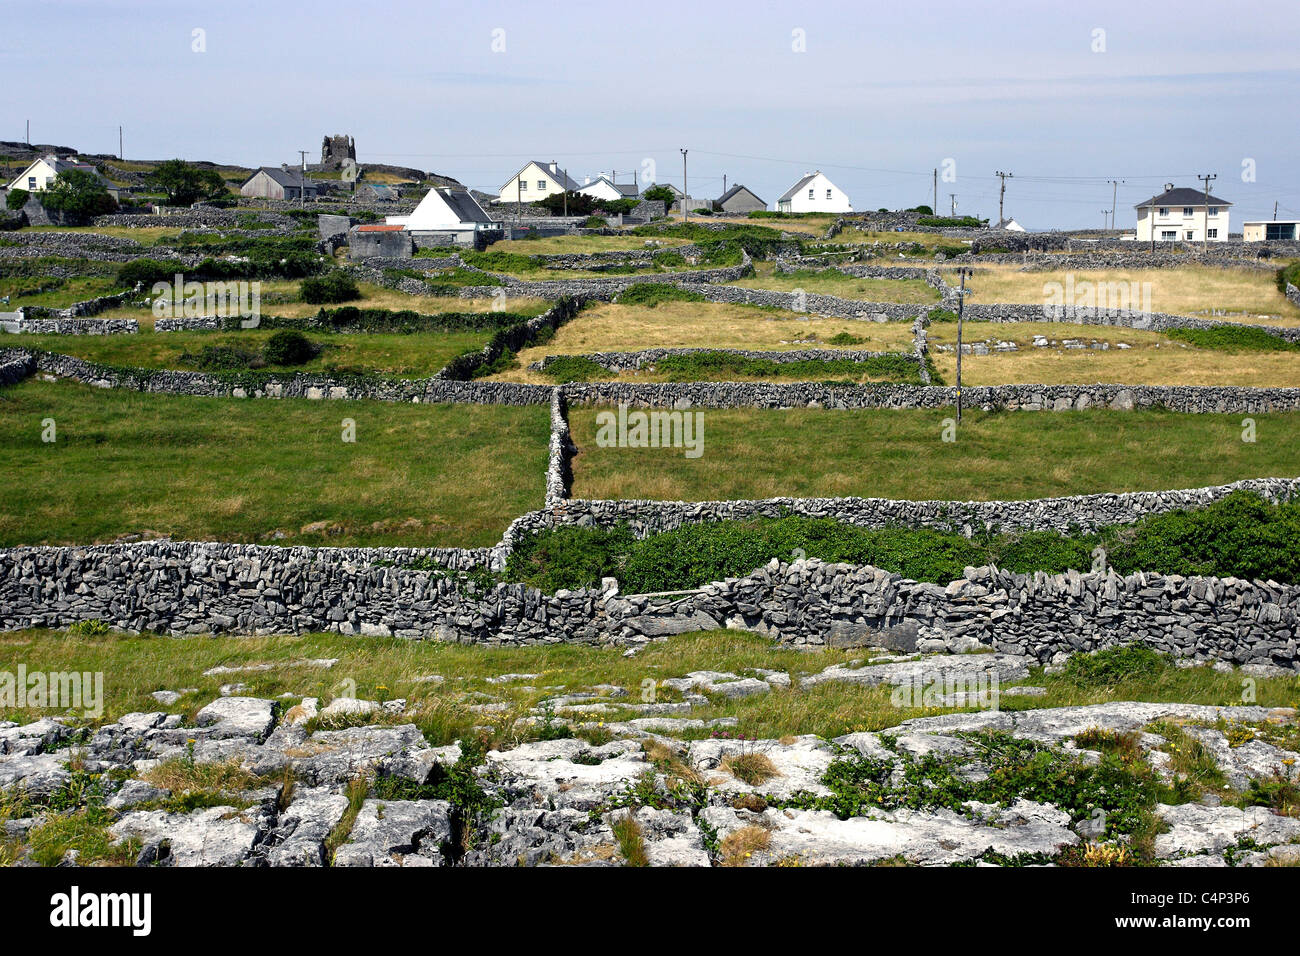 Rocky Stone Walls Landscape and Cottages, Inishere Island Ireland Stock Photo